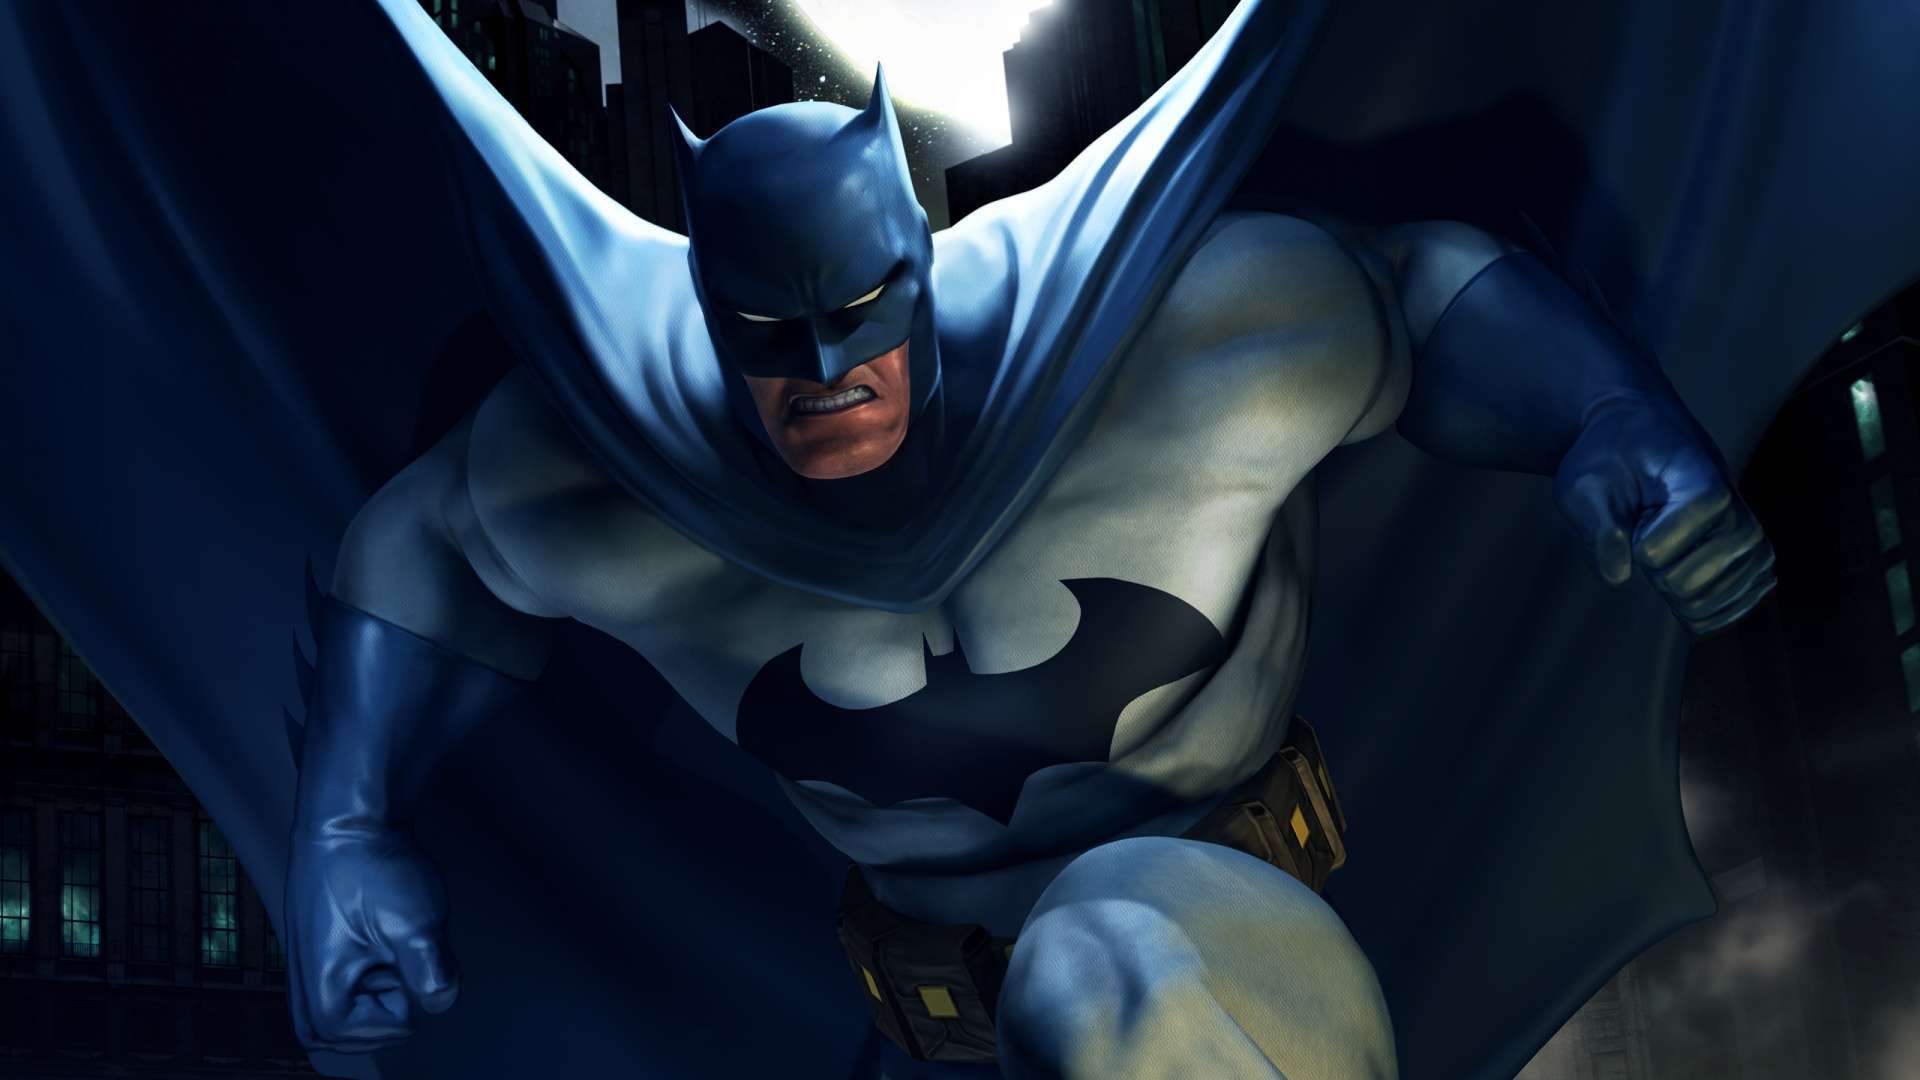 Wallpaper Batman Dc Universe Online HD 1080p Upload At